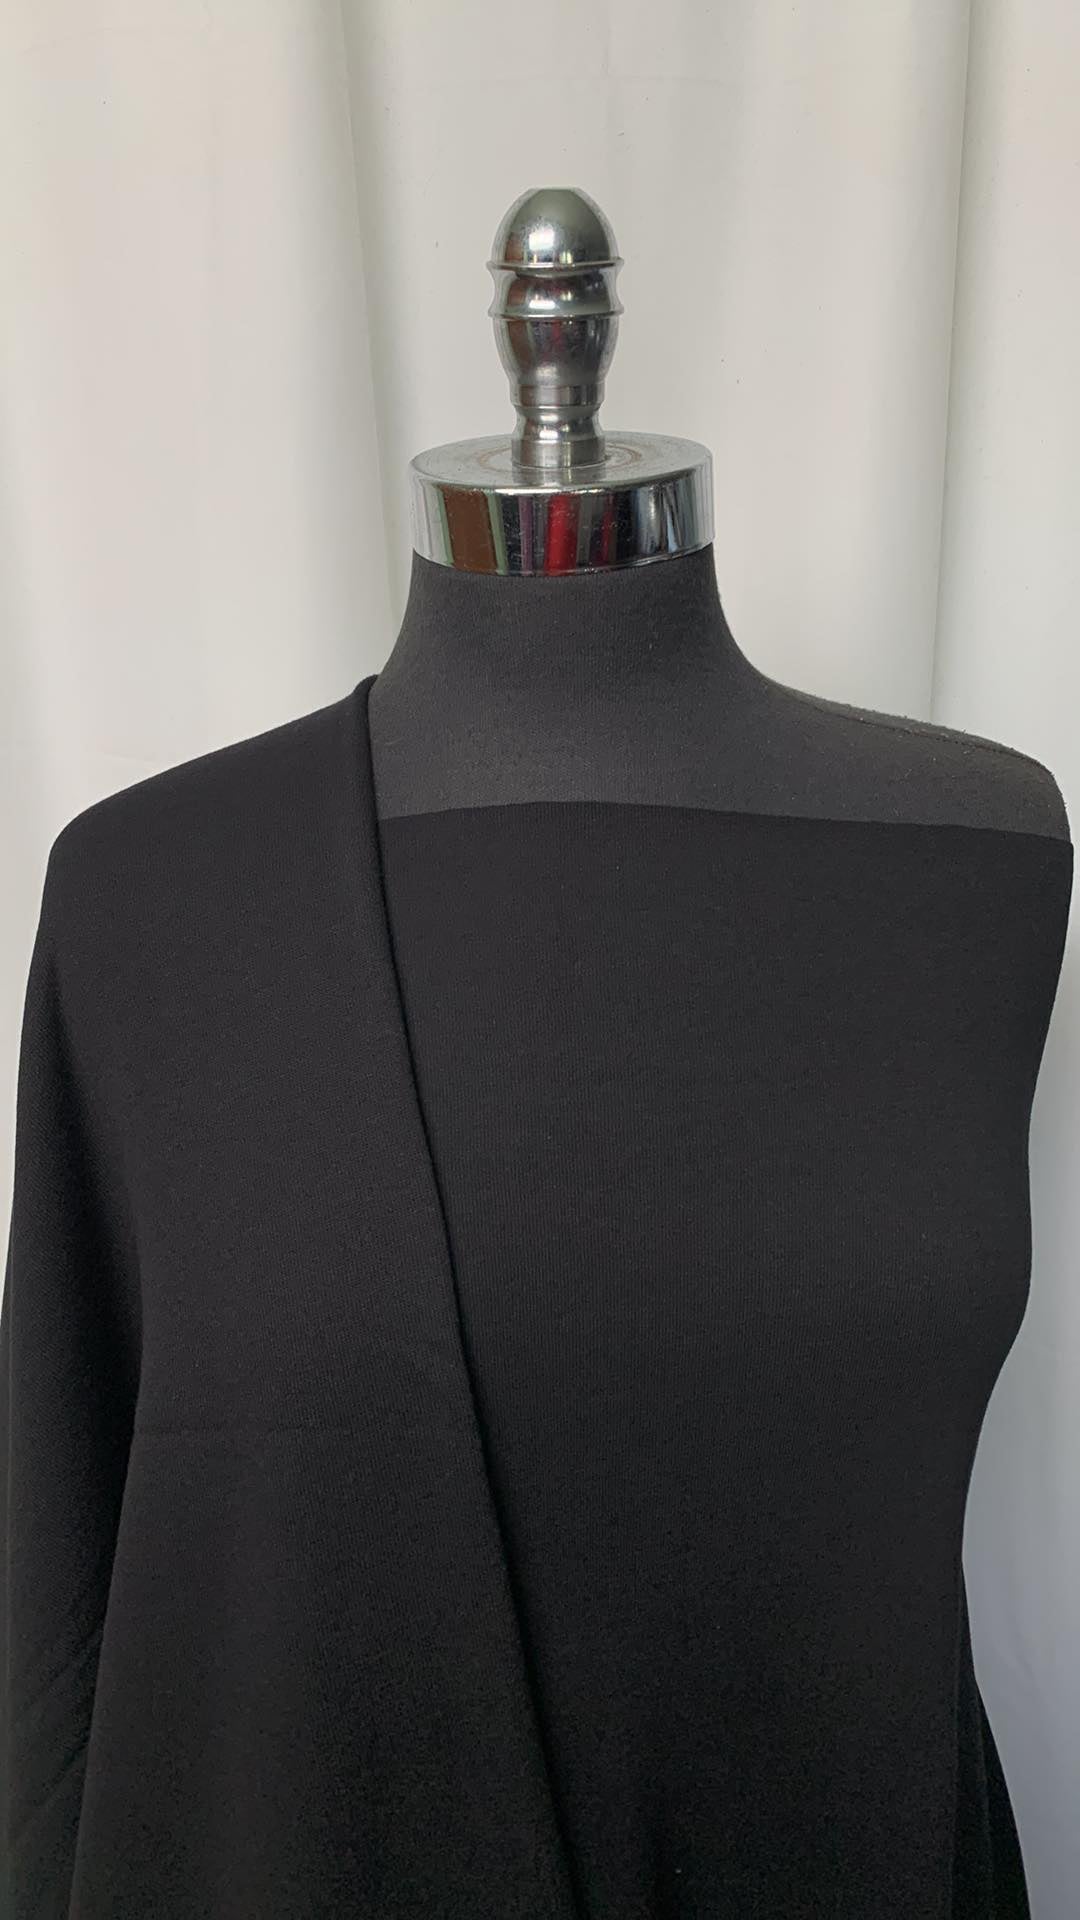 DOUBLE BLACK BUNDLE : 1+YD C/P Sweatshirt Fleece (72" Wide) & 1YD Black Combed Cotton 1x1 Rib (72" Wide) : A1570